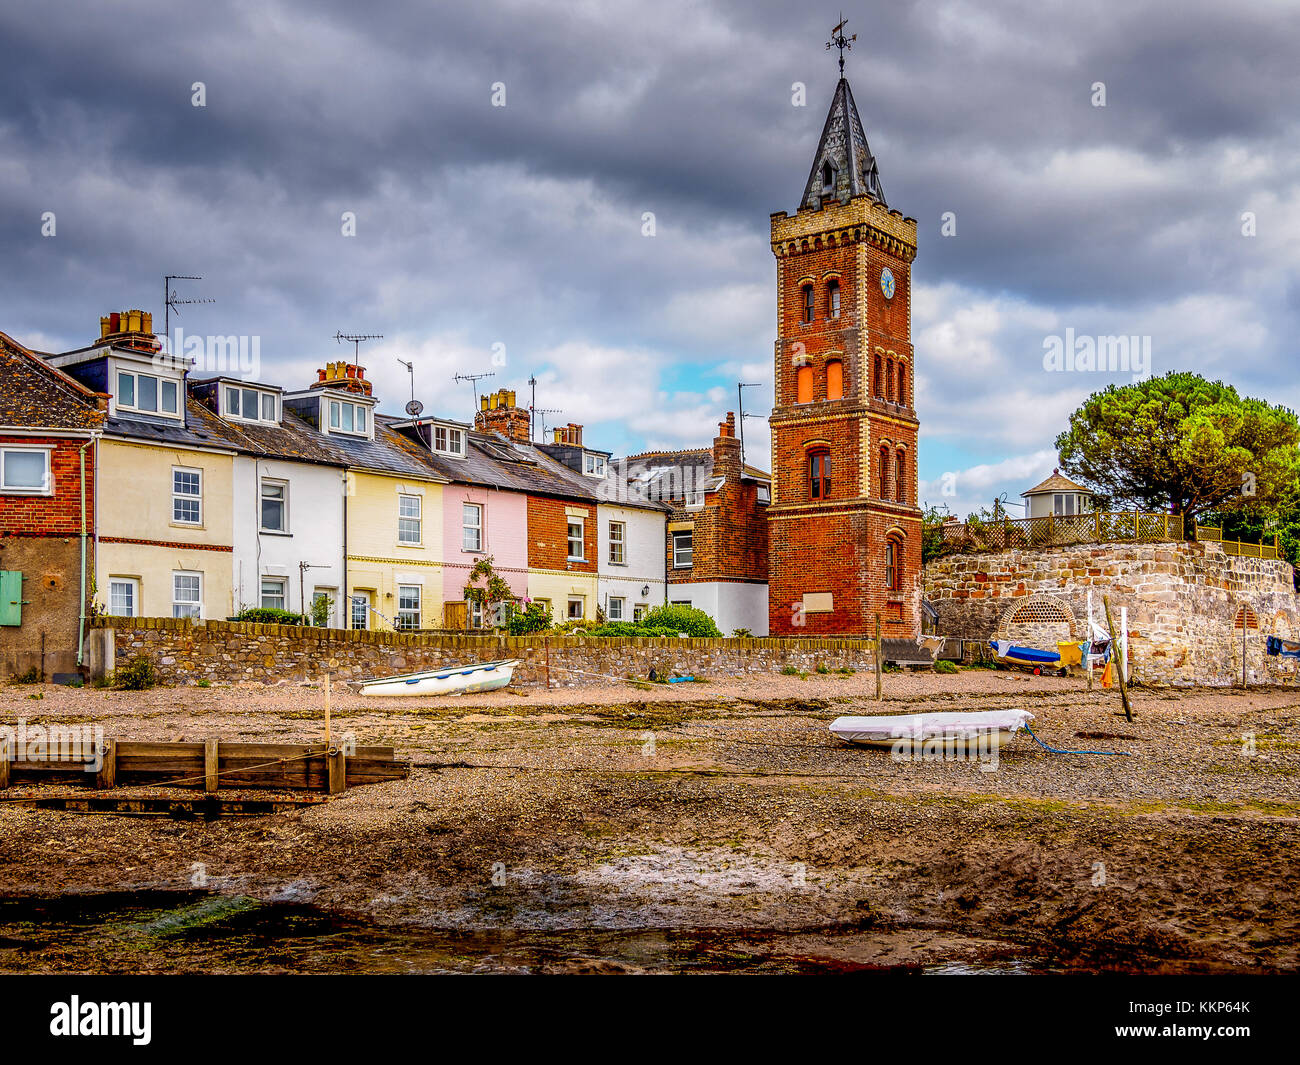 Lympstone, Devon est connu localement pour Peter's Tower, une tour de l'horloge de riverfront italianisant brique construit autour de 1885 par W.H. peters comme un mémorial à son Banque D'Images